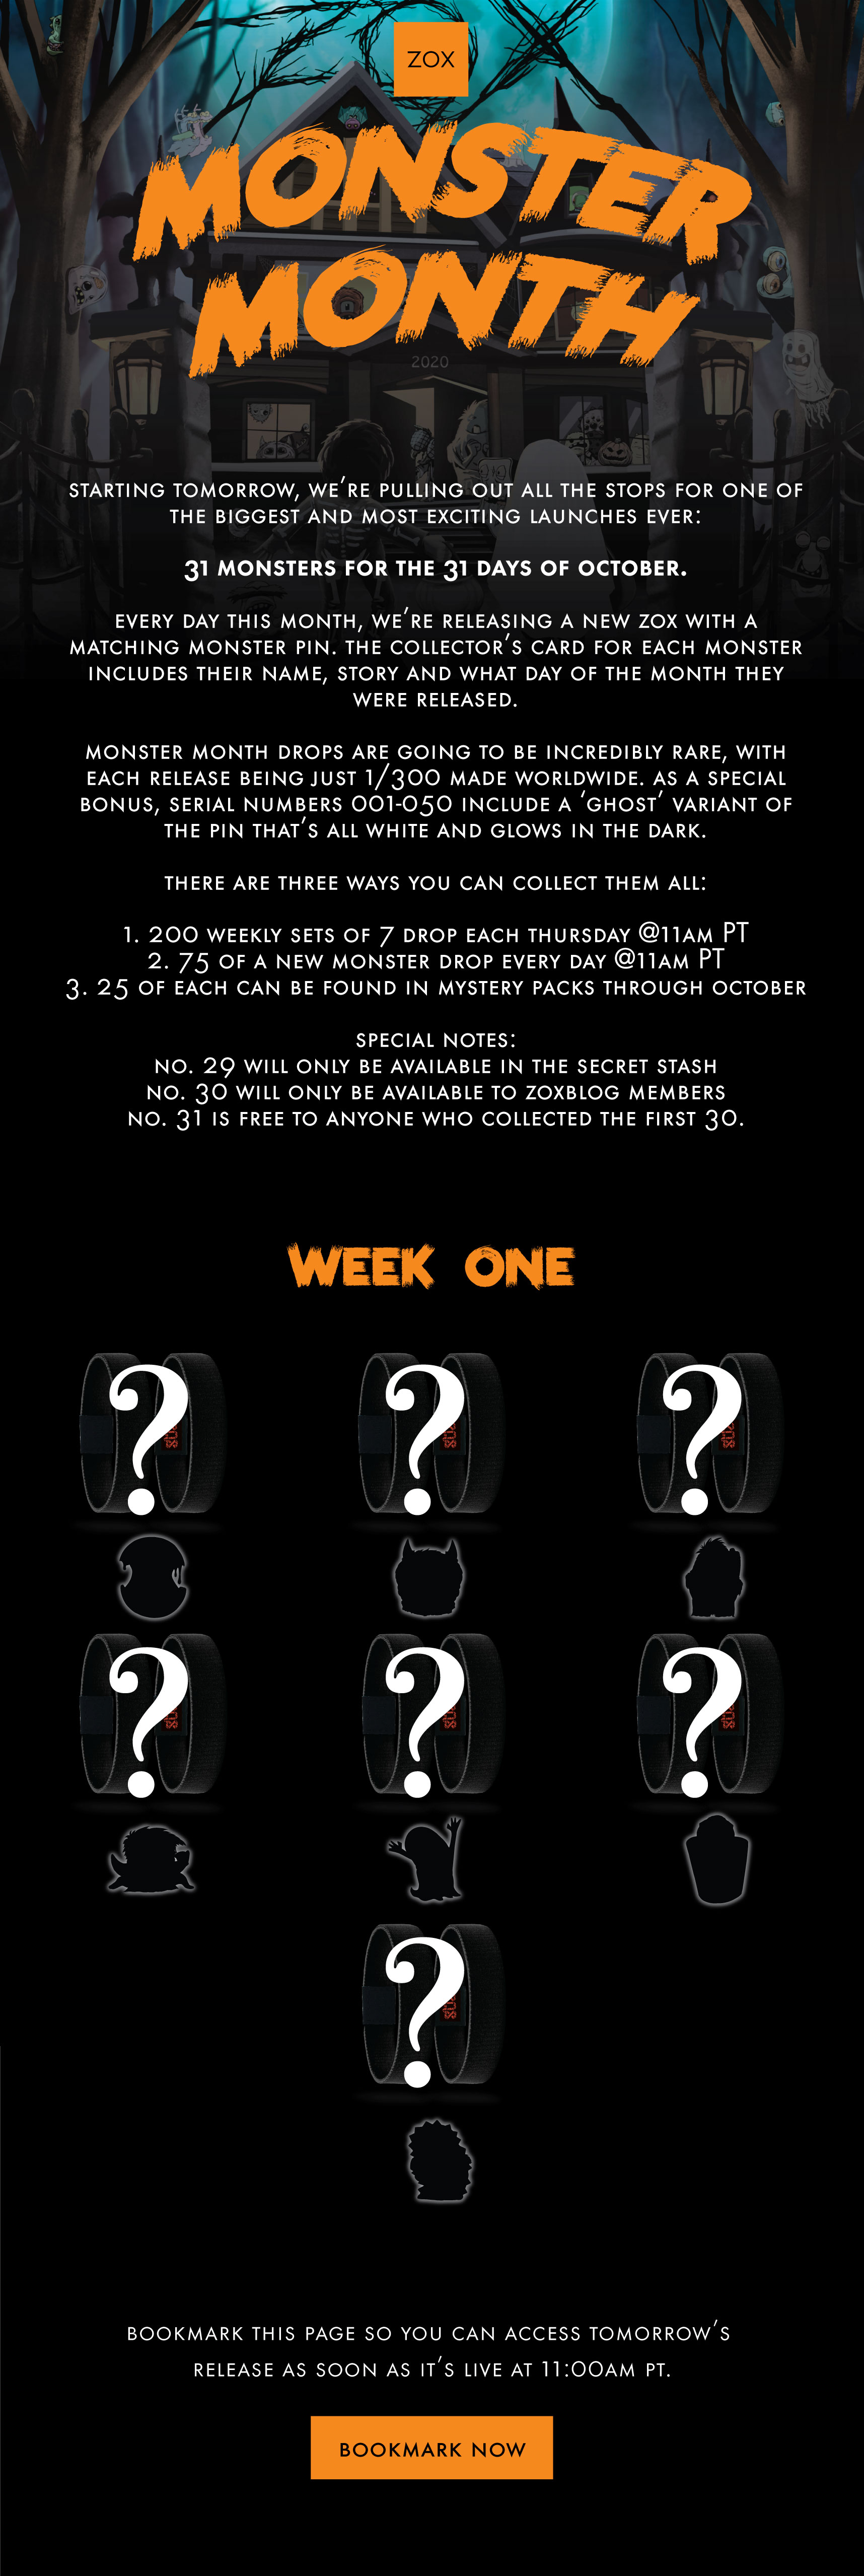 Week 1 Monster Month Pack